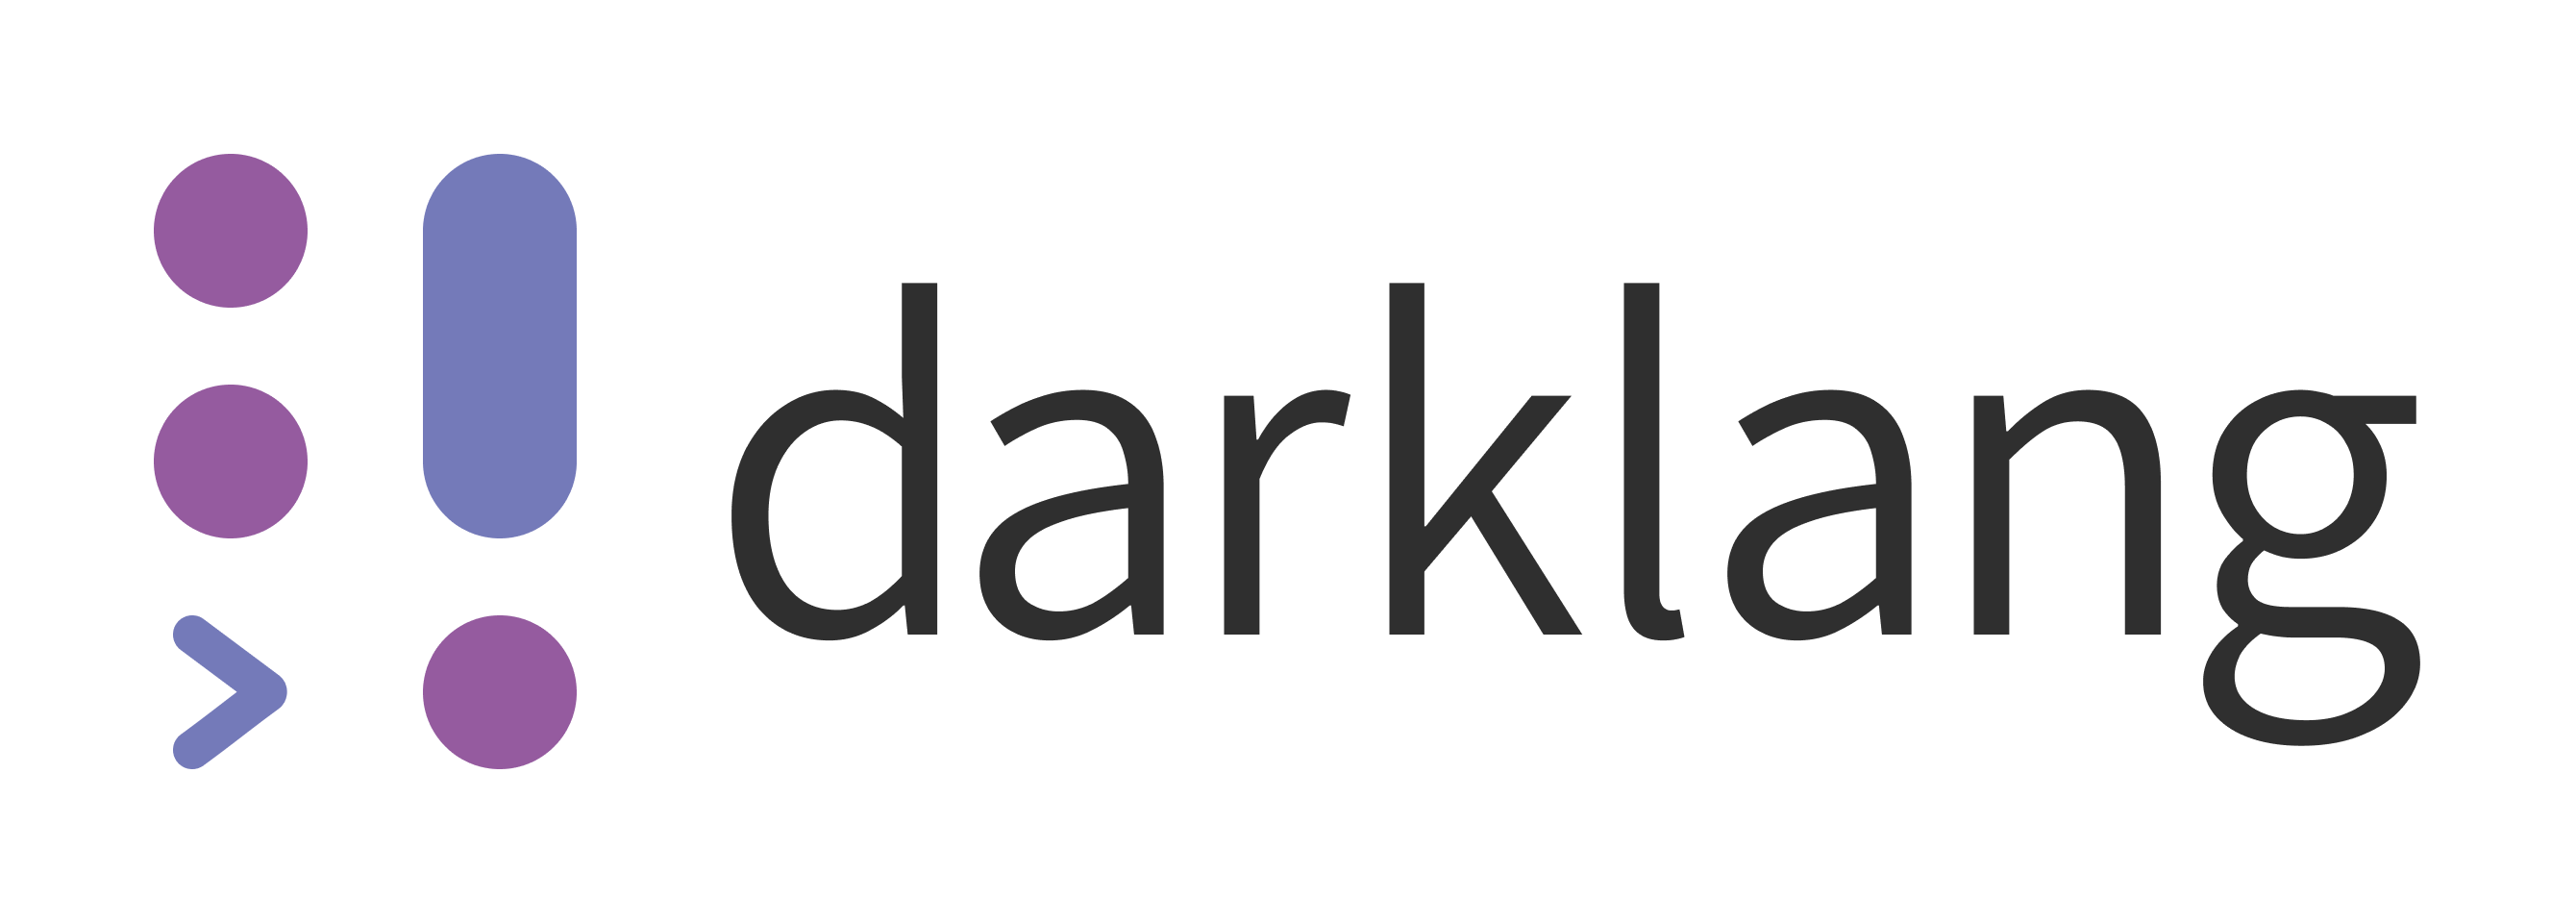 Darklang logo